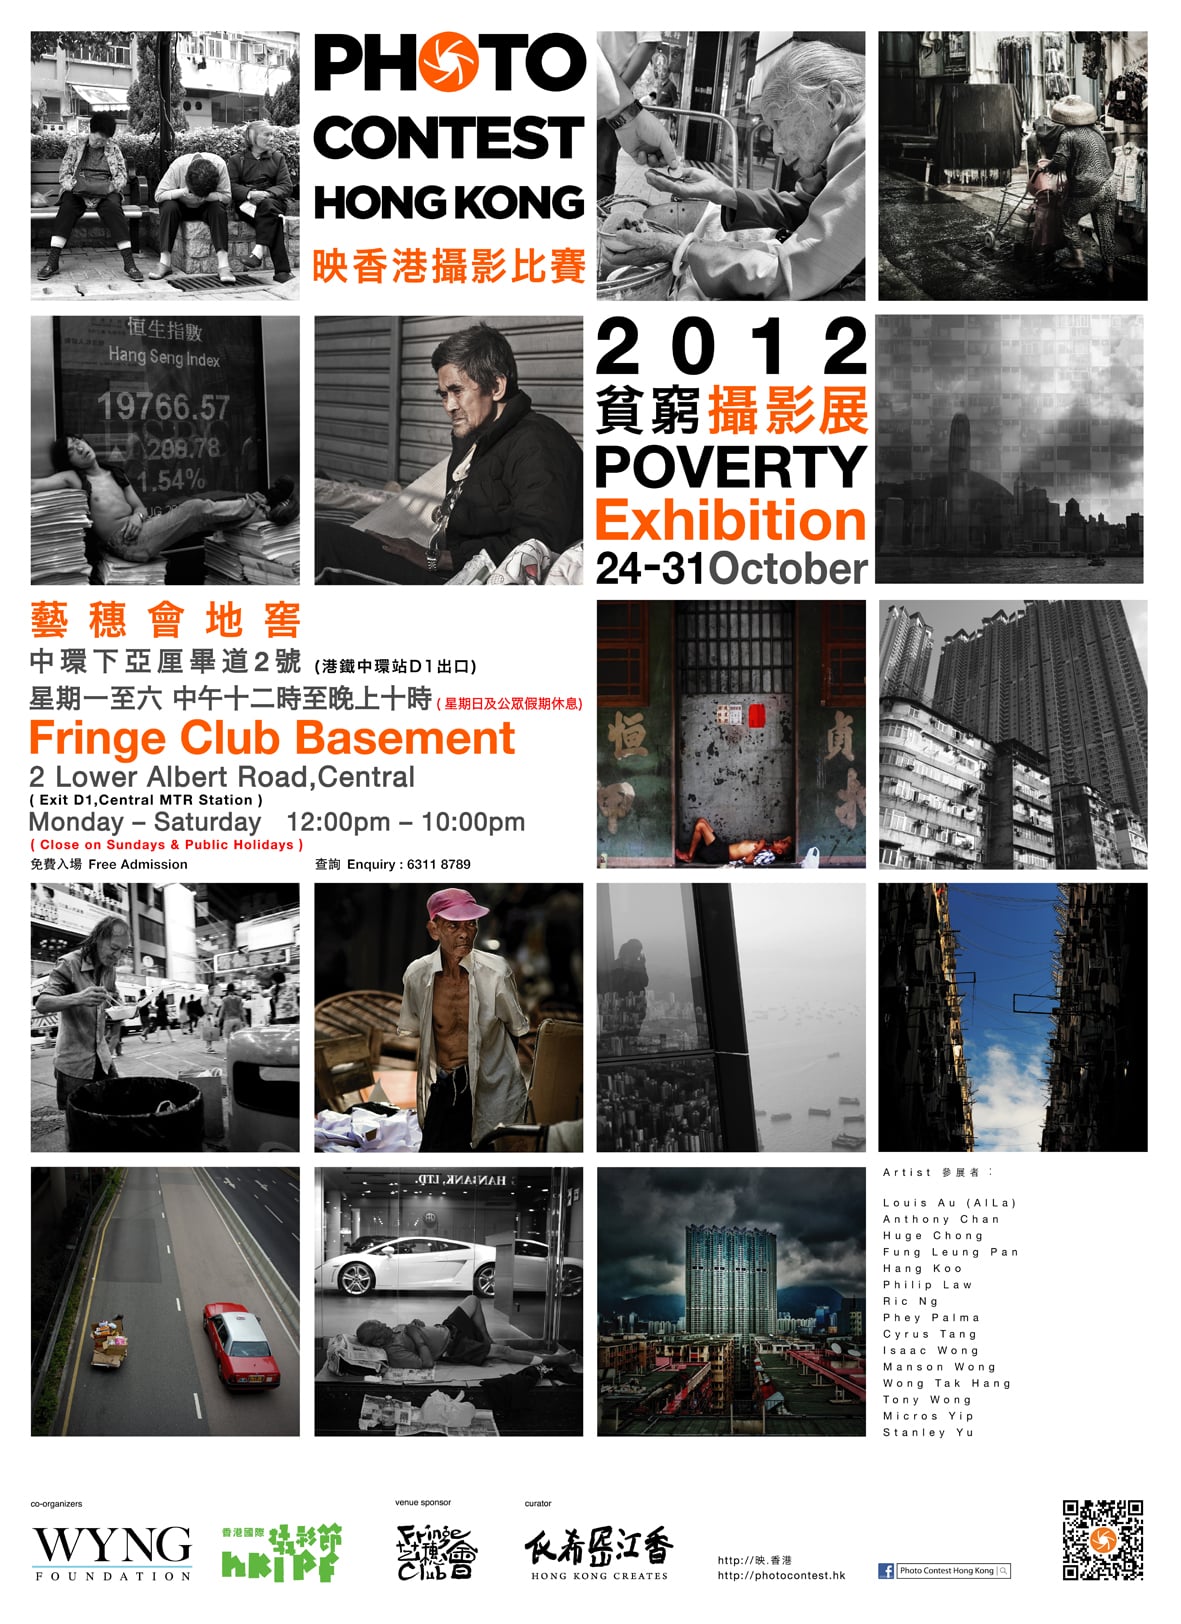 影香港攝影比賽 - 貧窮